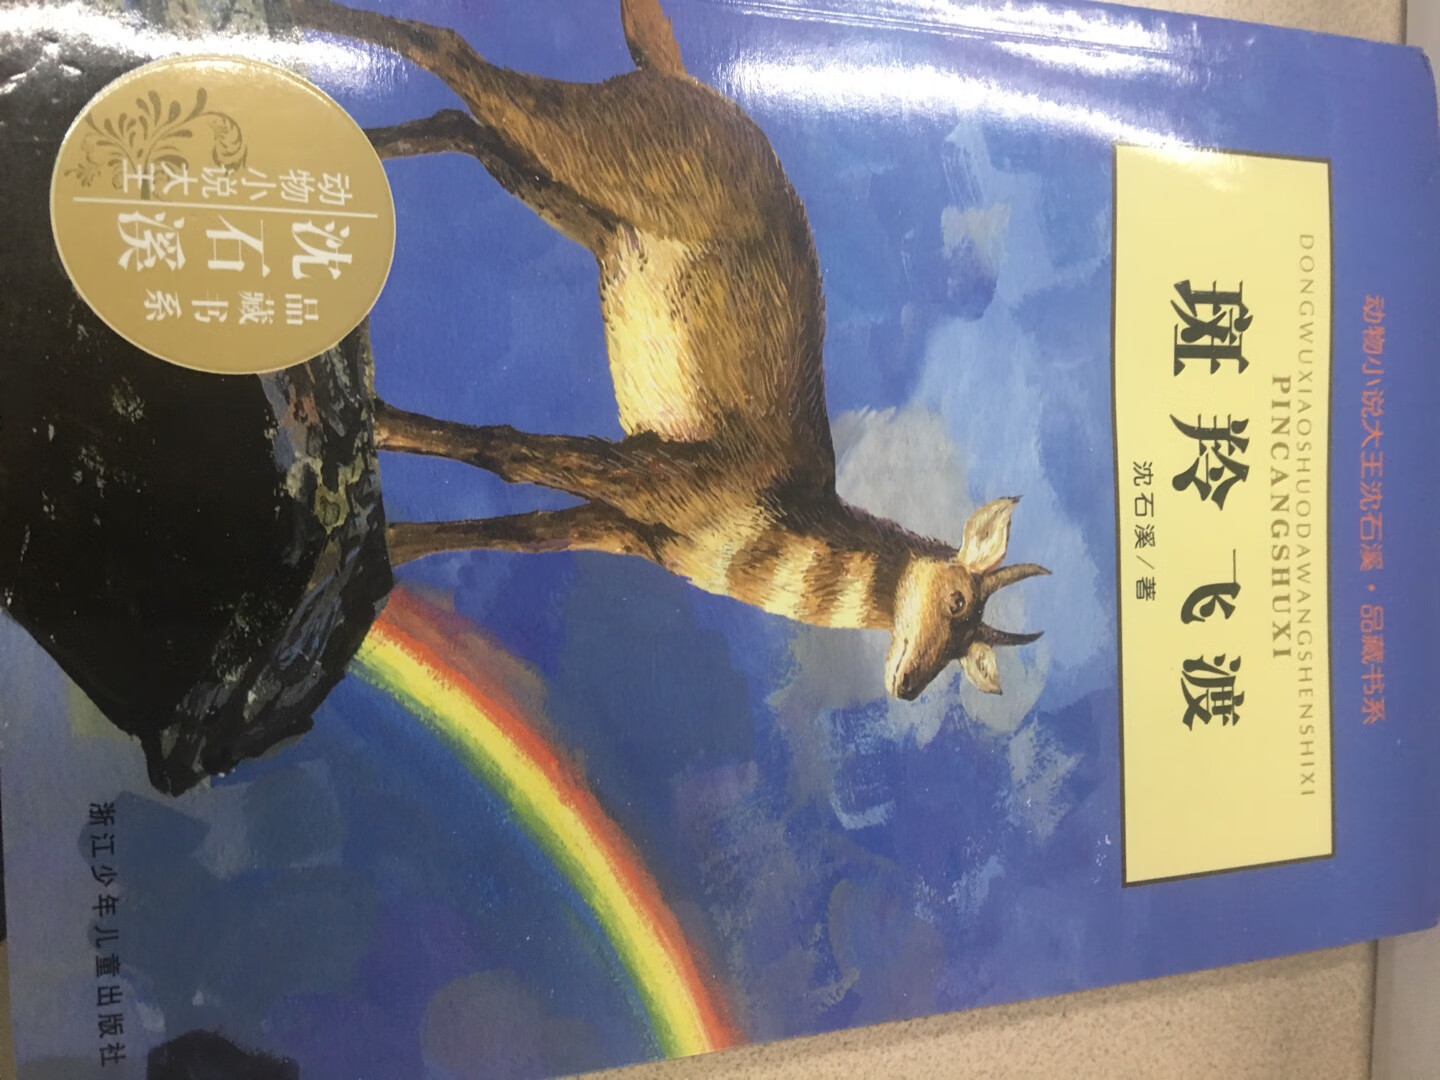 儿子特别喜欢沈石溪老师的作品，他写的动物小说很棒。书本的封面和纸质都很好，喜欢的朋友们赶紧行动起来吧